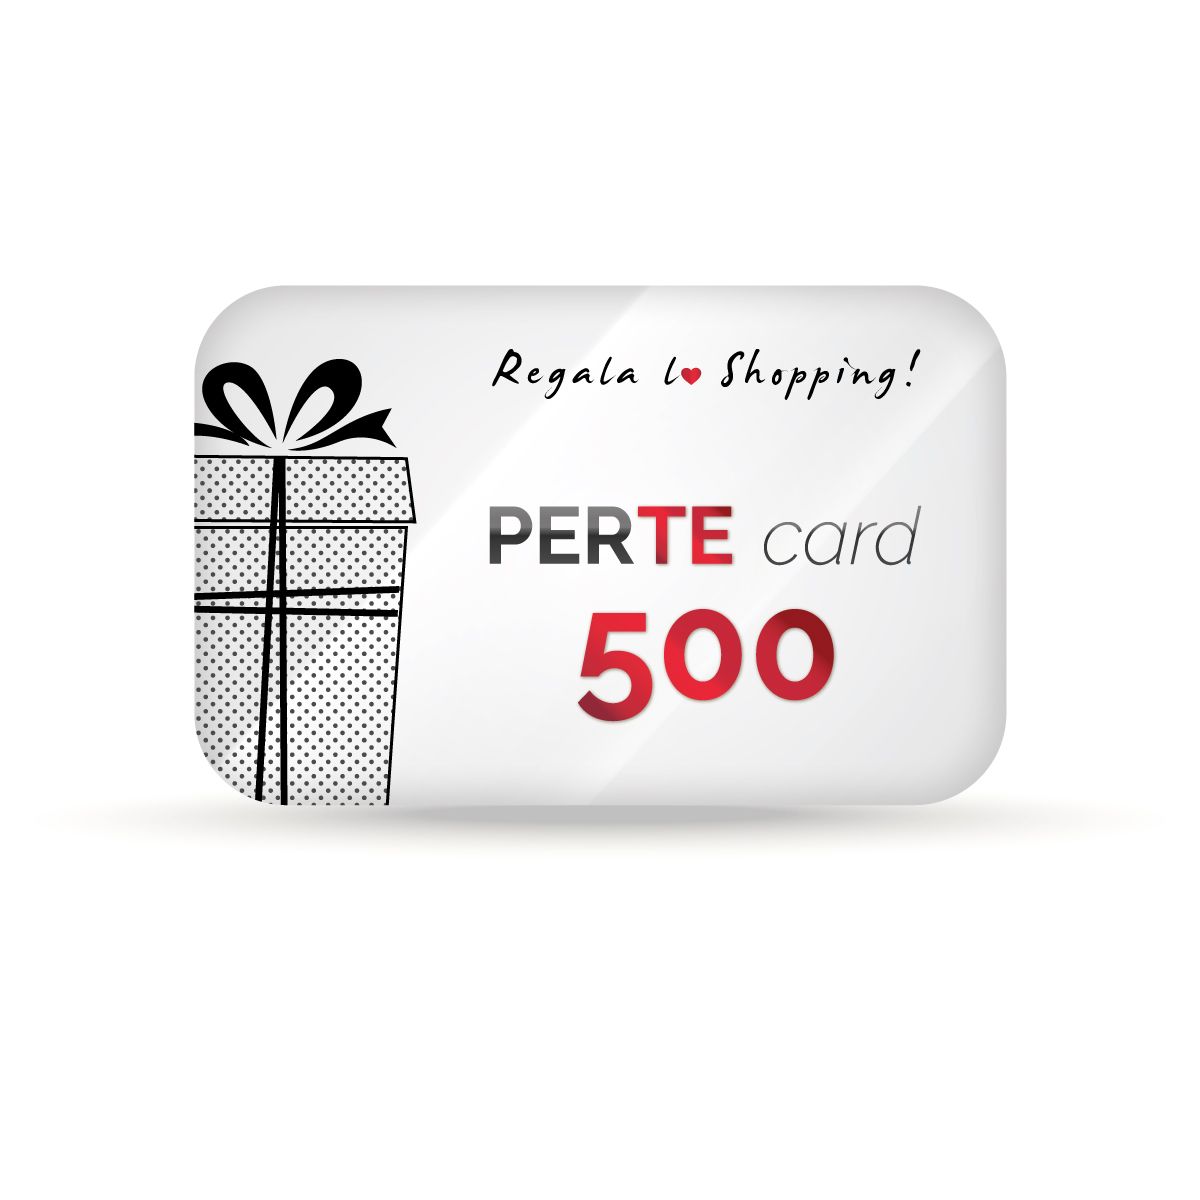 PERTE Card 500